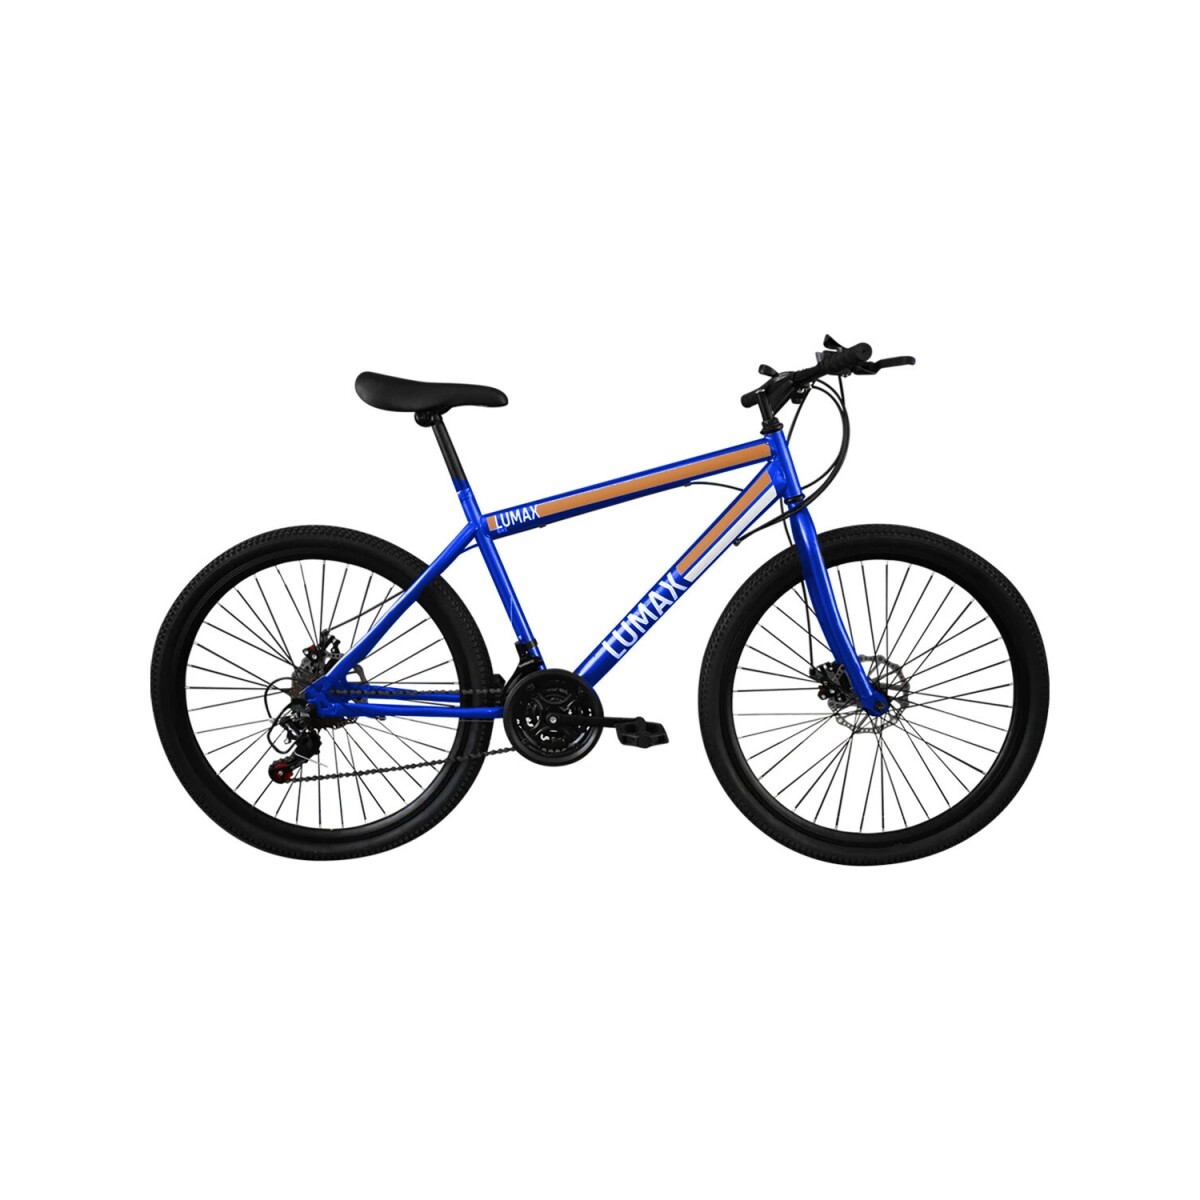 Bicicleta montaña rodado 26 freno disco Lumax - Azul 